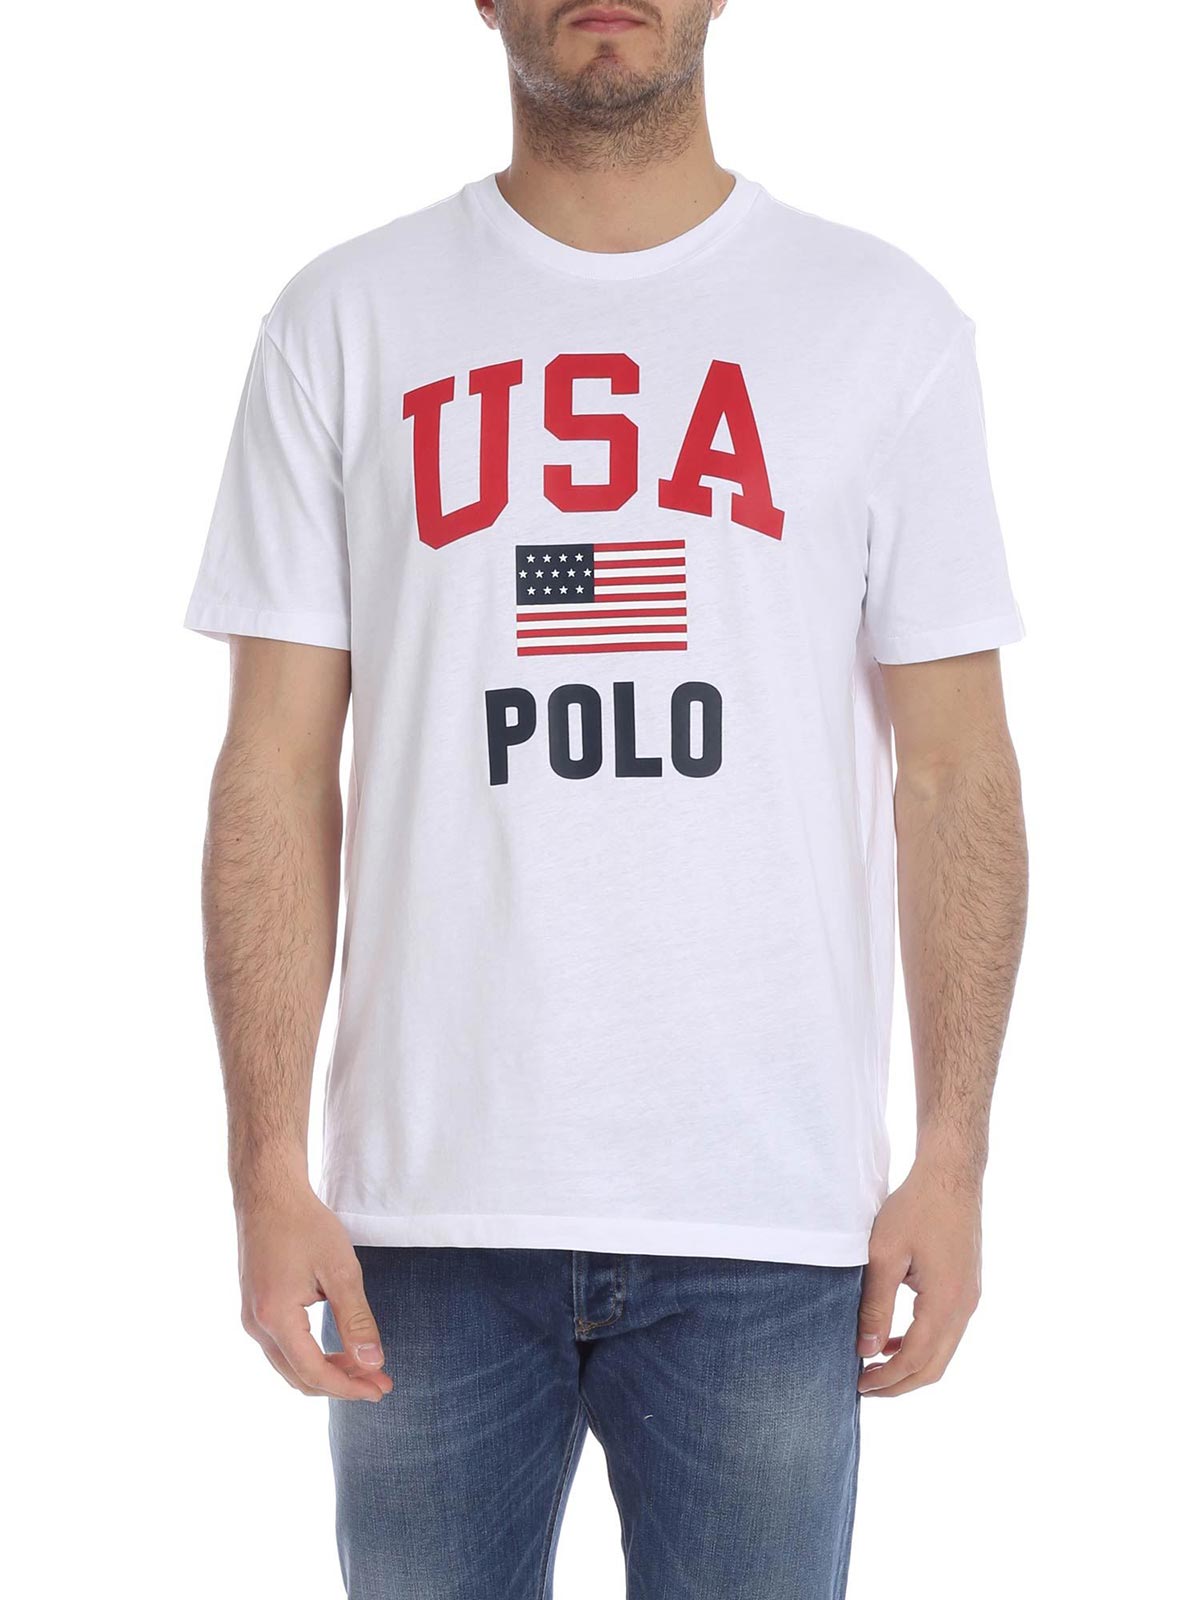 POLO RALPH LAUREN Men's USA Flag T-Shirt White | 710743917002 | Botta & B  Online Store